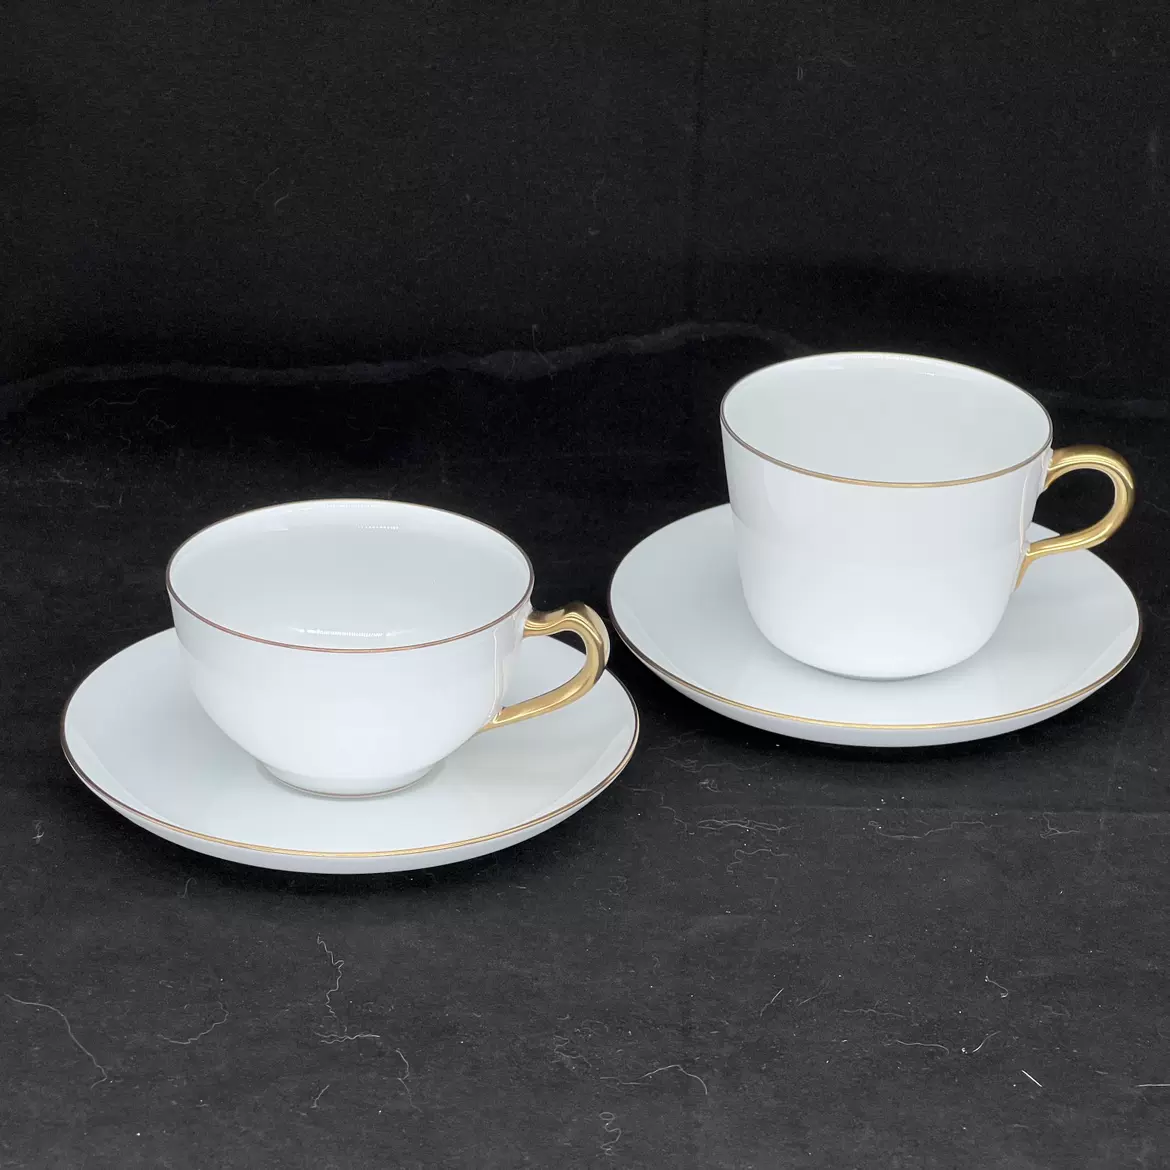 日本進口大倉陶園咖啡杯OKURA ART 白瓷鎏經典款 早餐杯紅茶杯1組-Taobao